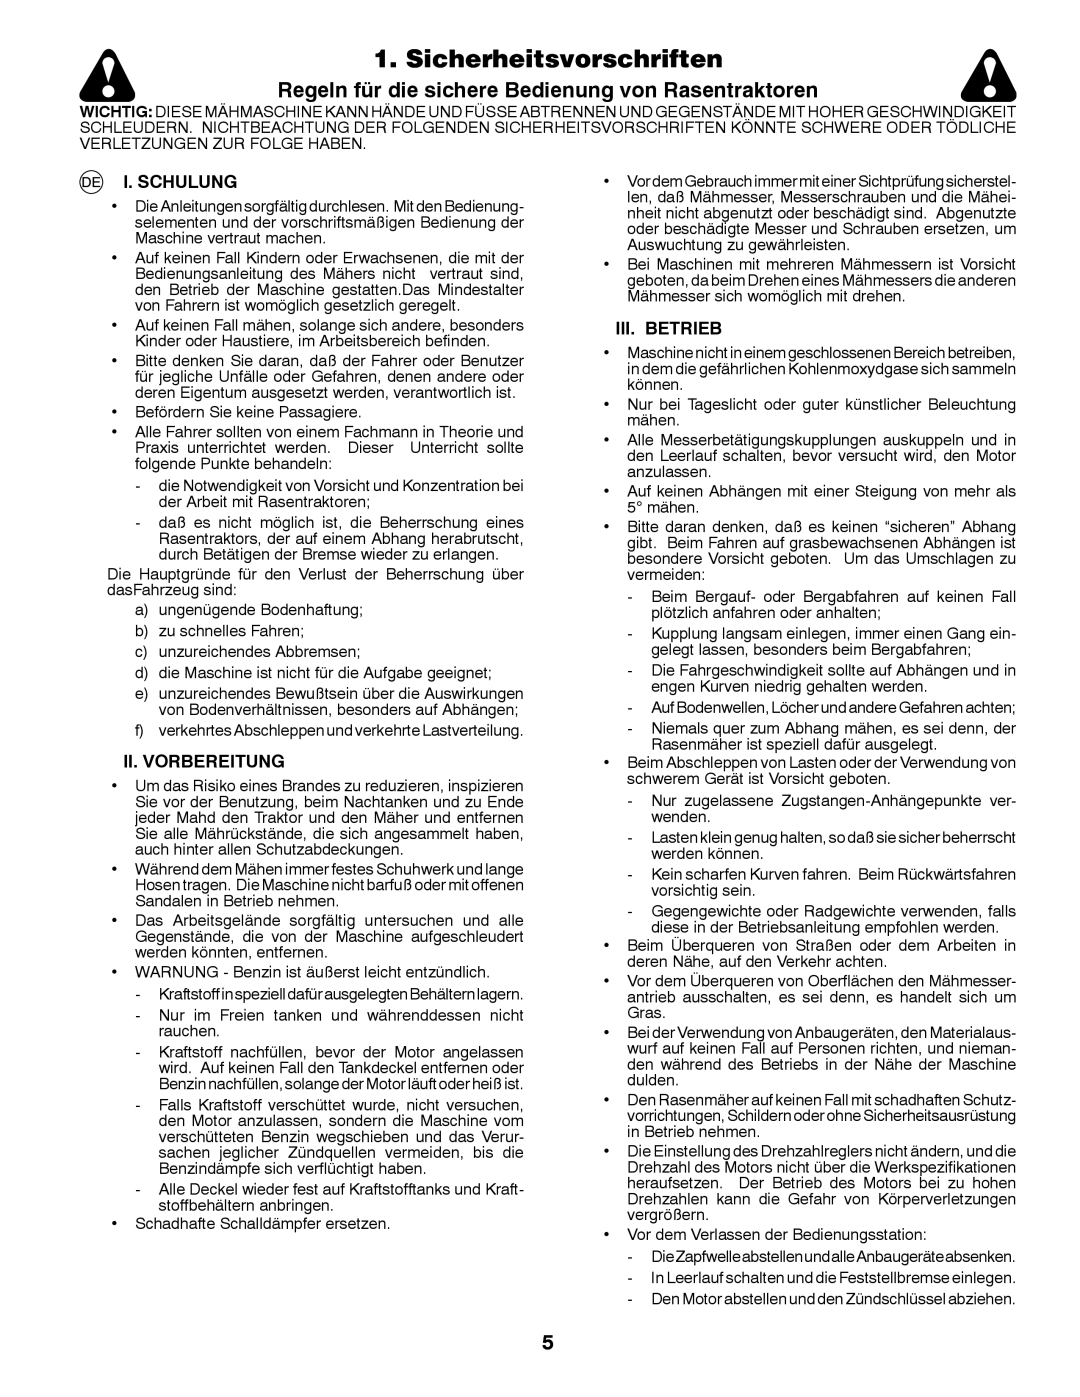 Husqvarna LT126 Sicherheitsvorschriften, Regeln für die sichere Bedienung von Rasentraktoren, I. Schulung, Iii. Betrieb 